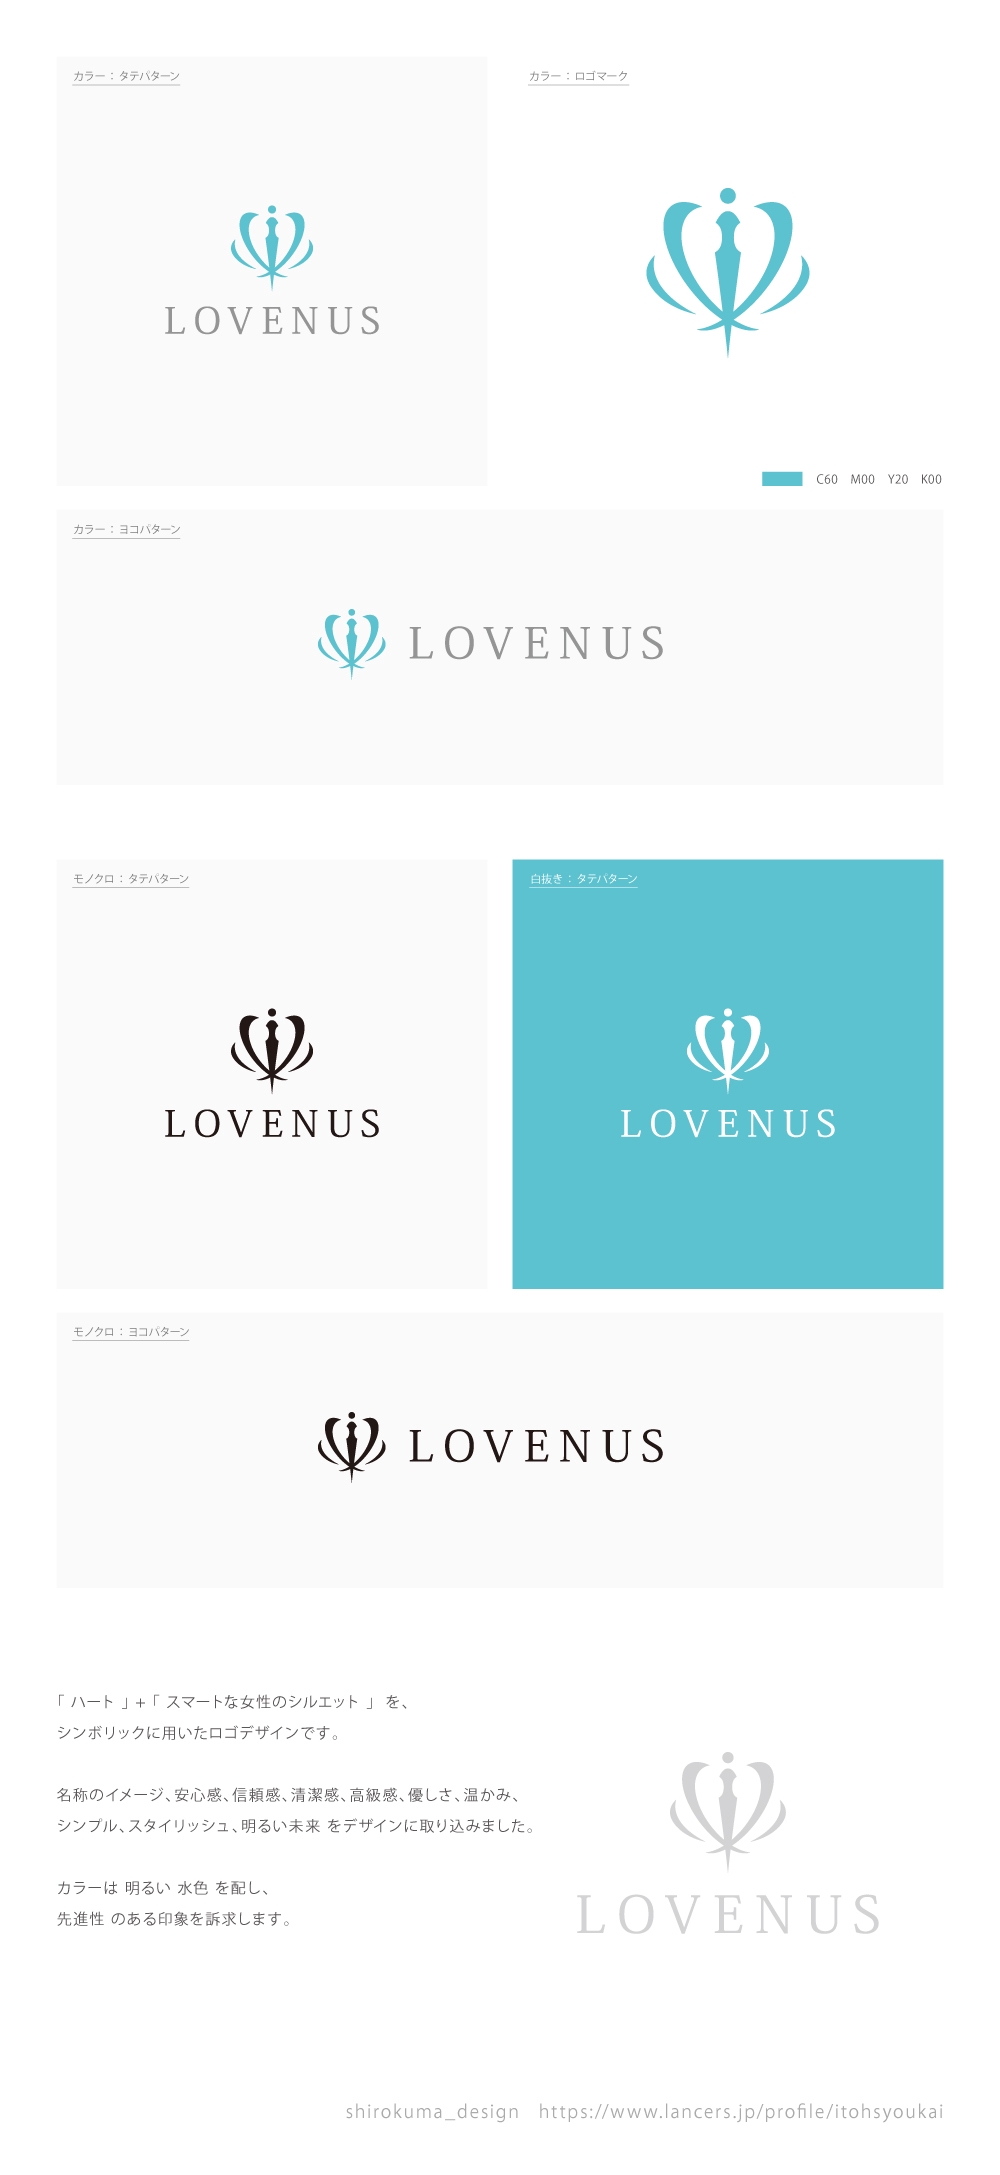 女性の為の多機能サロン「LOVENUS」のロゴ